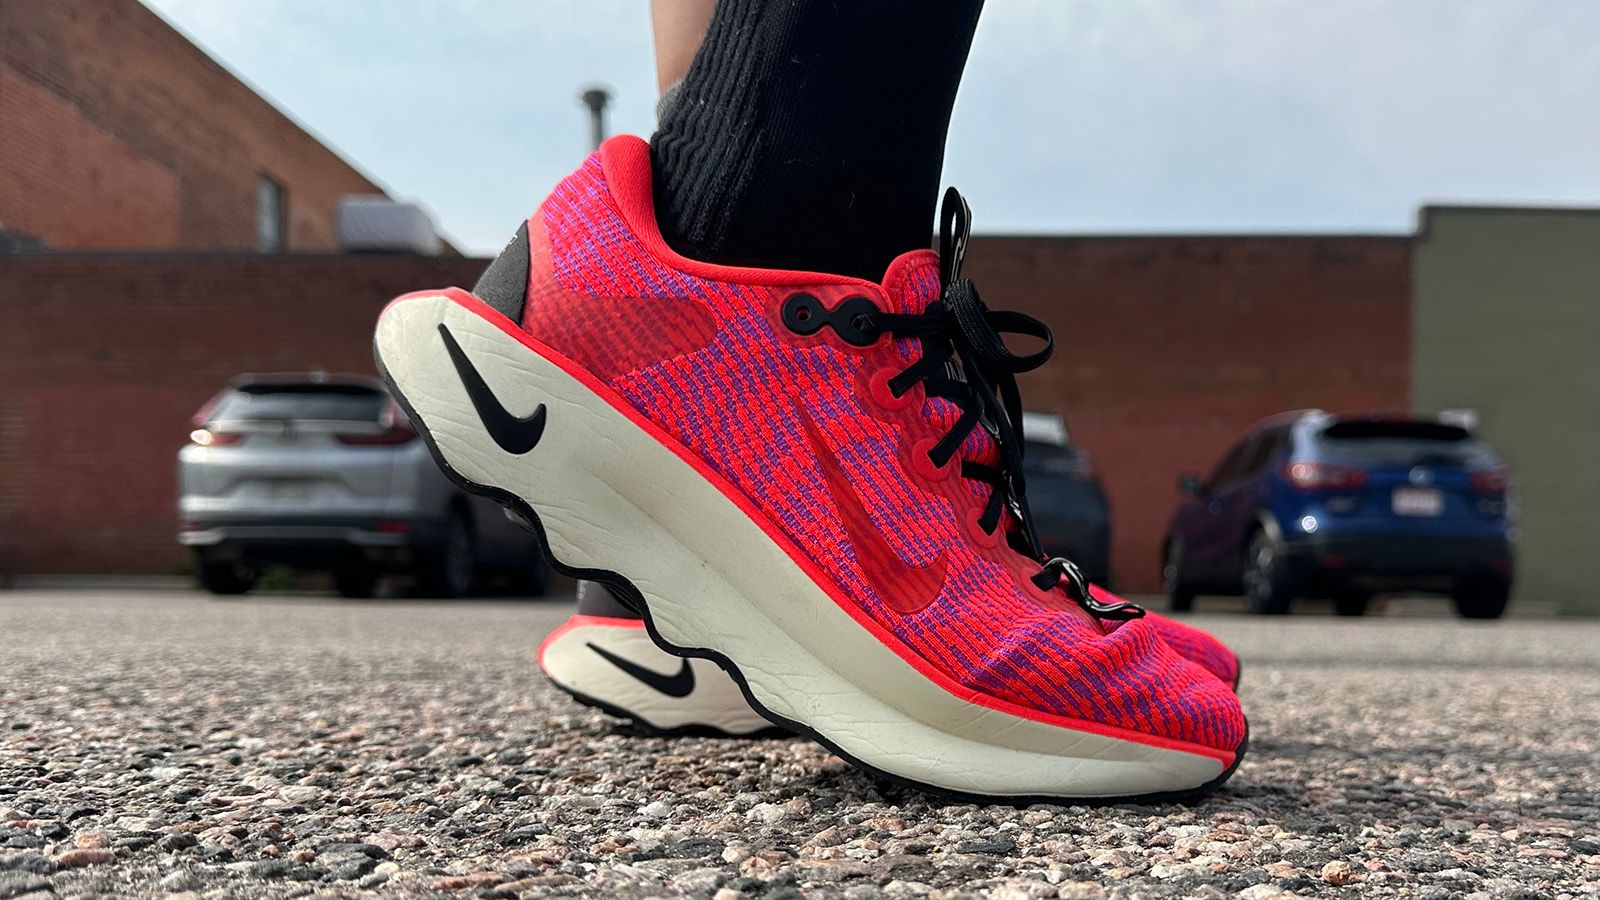 Nike Motiva shoe runners for feet | CNN Underscored